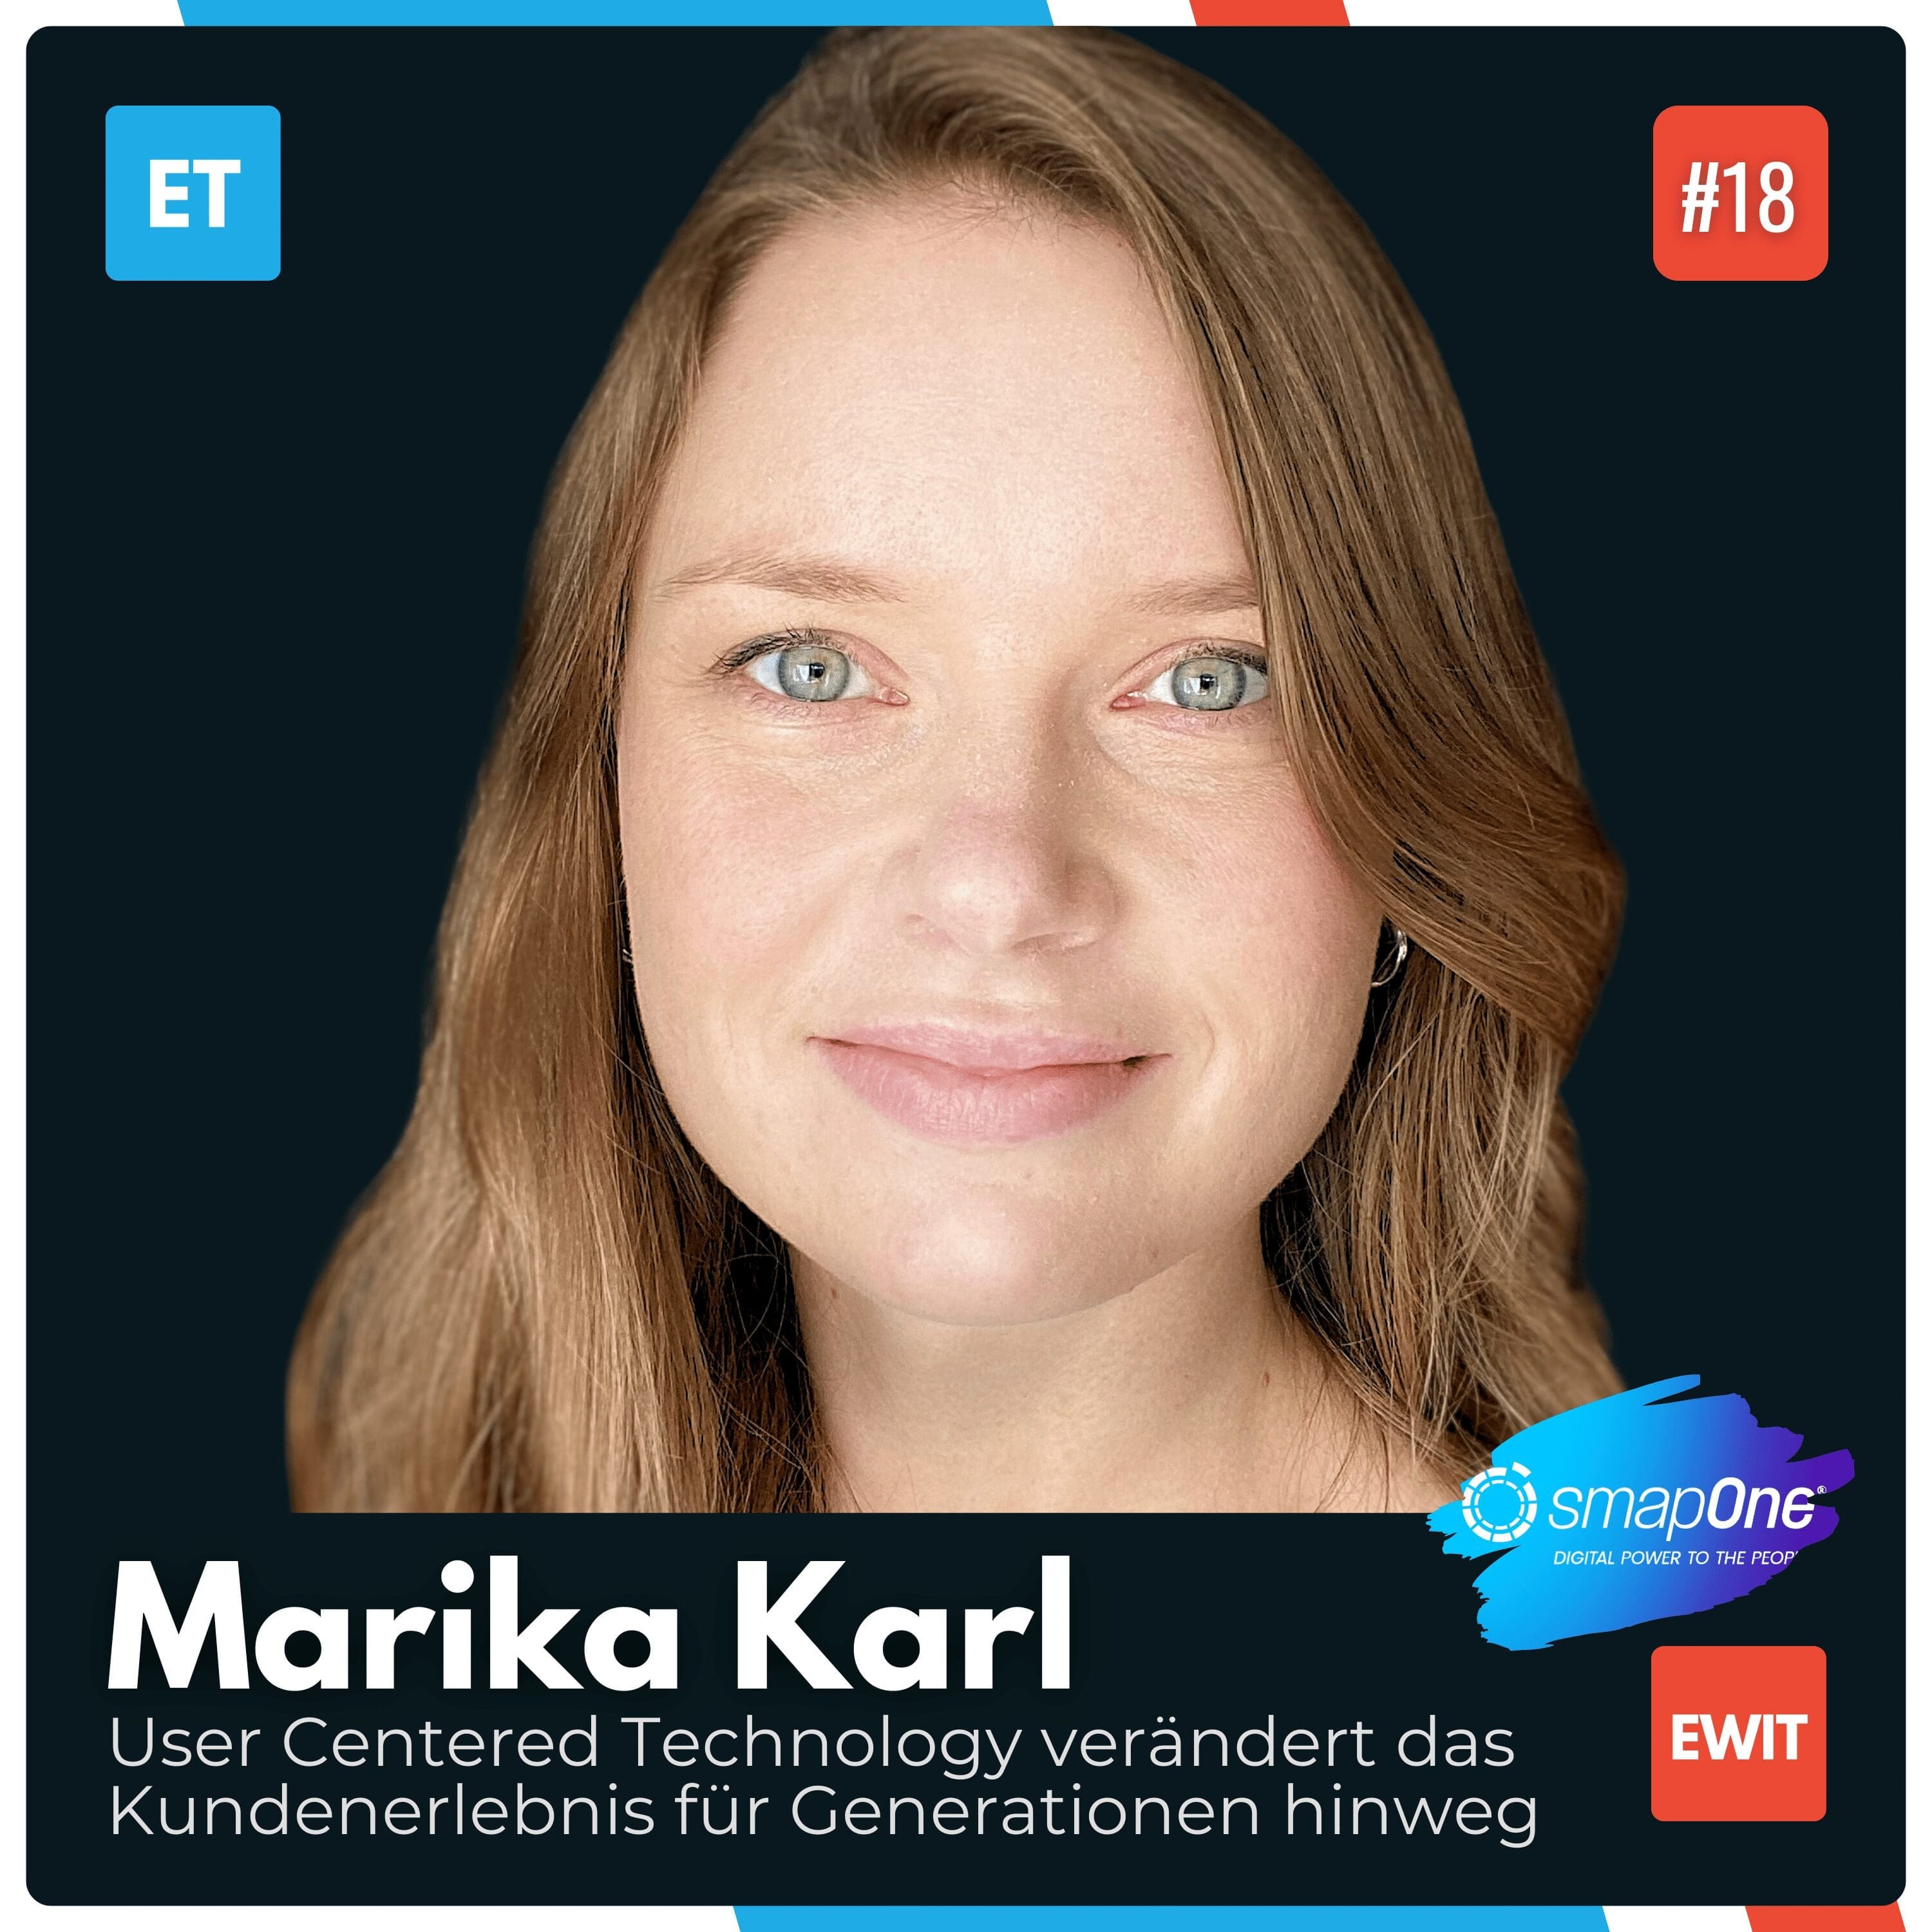 Marika Karl erklärt die Bedeutung von User Centered Technology und die Rolle von Verhaltenspsychologie in der modernen Produktentwicklung